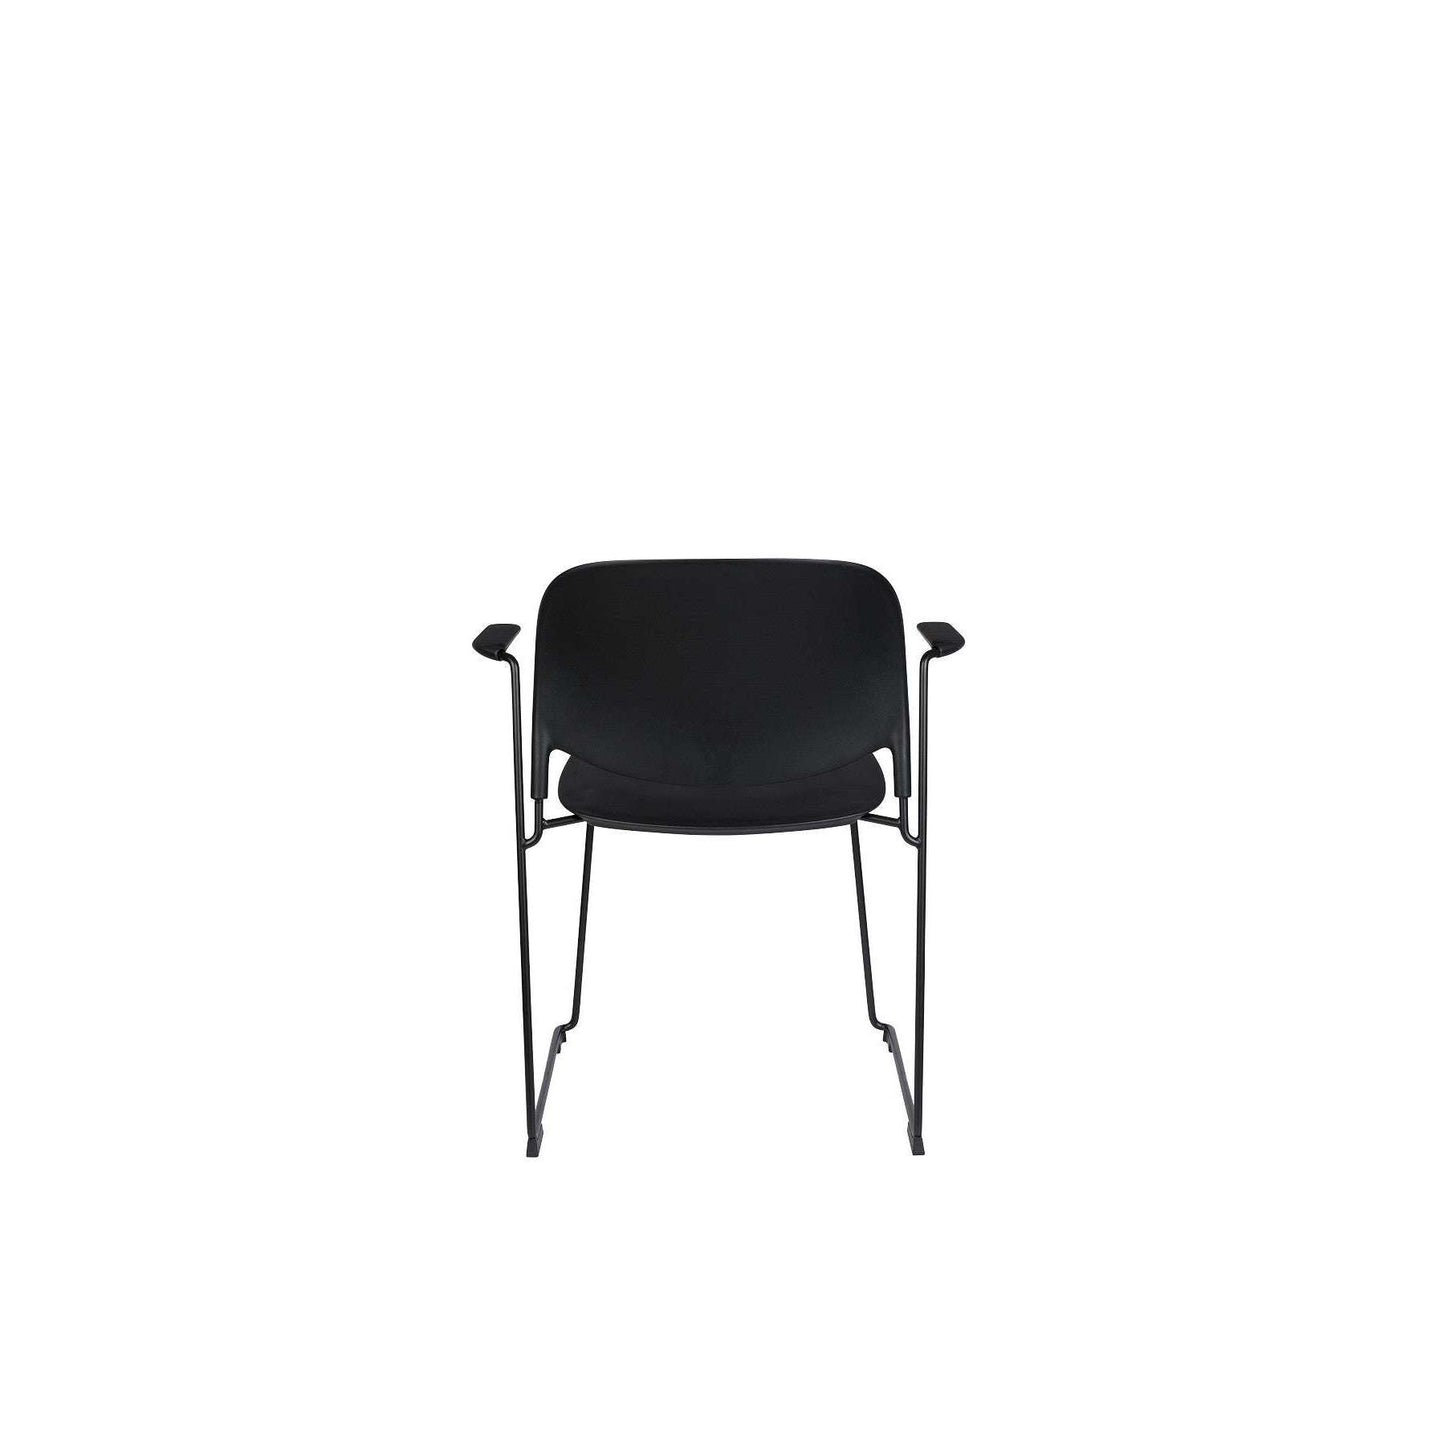 Staerkk stoel met armleuningen stacks zwart 53 x 63,5 x 80,5 cm